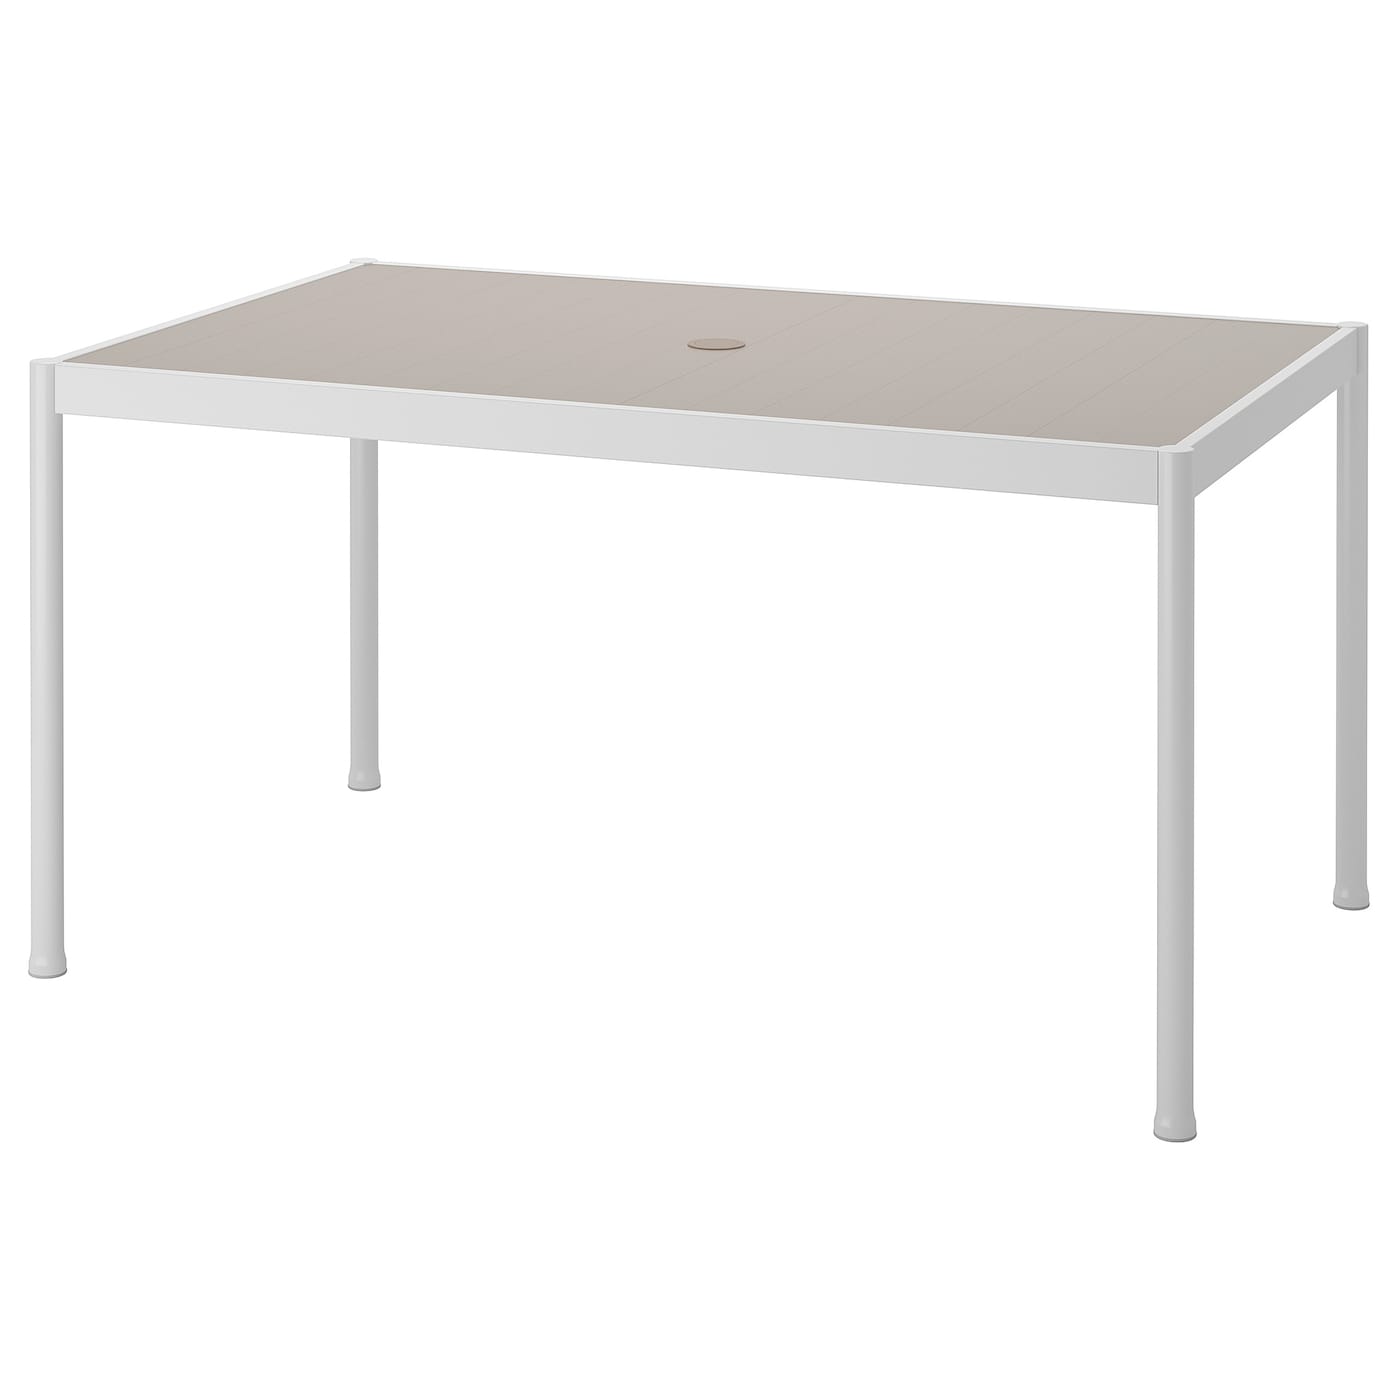 Стол обеденный - IKEA SEGERÖN/SEGERON, 147х91х75 см, бежевый/светло-серый, ИКЕА